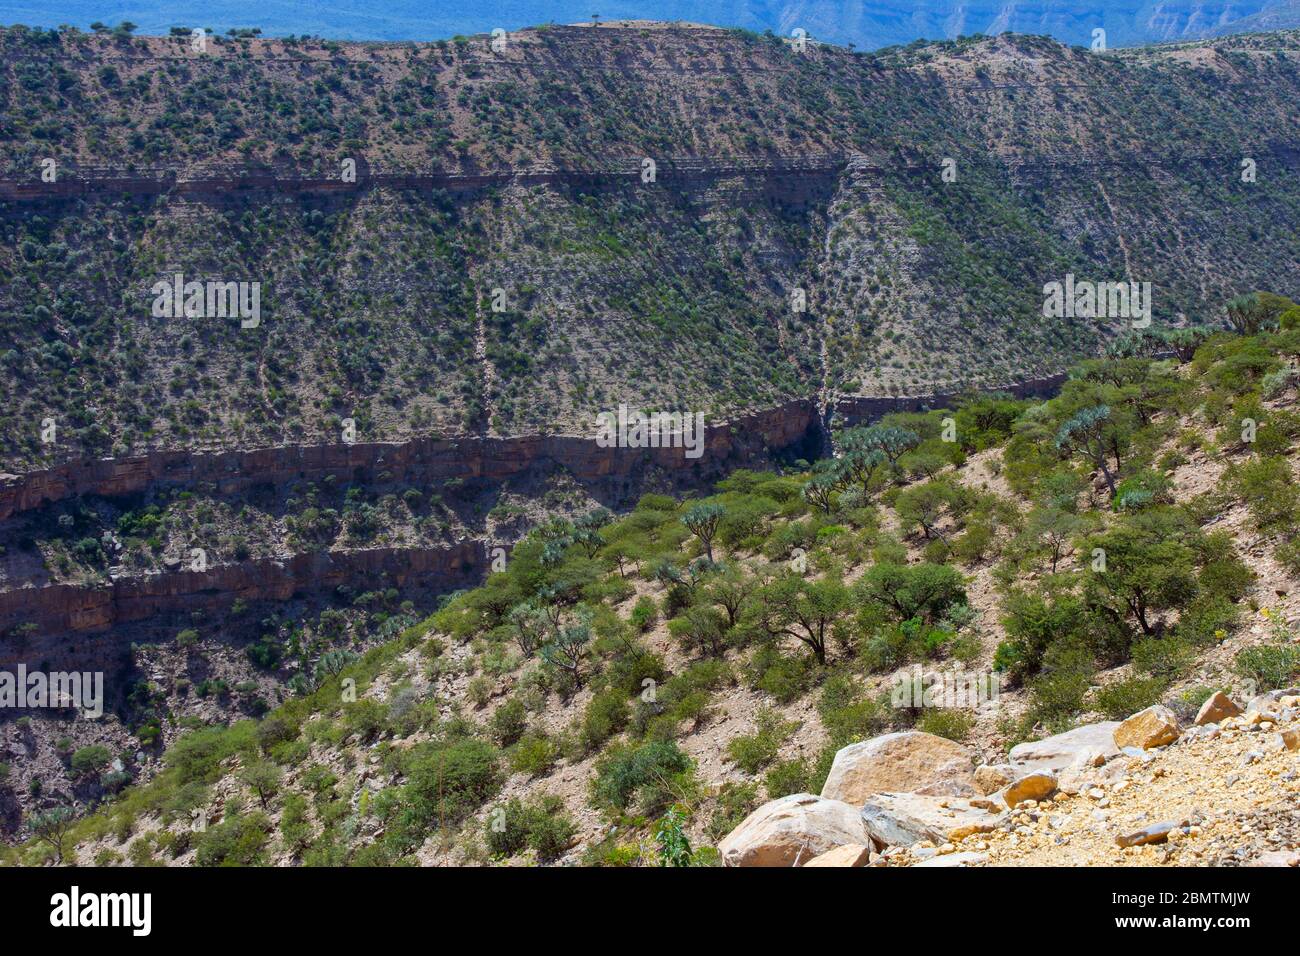 Paysage montagneux sec de la région d'Afar, en Éthiopie Banque D'Images